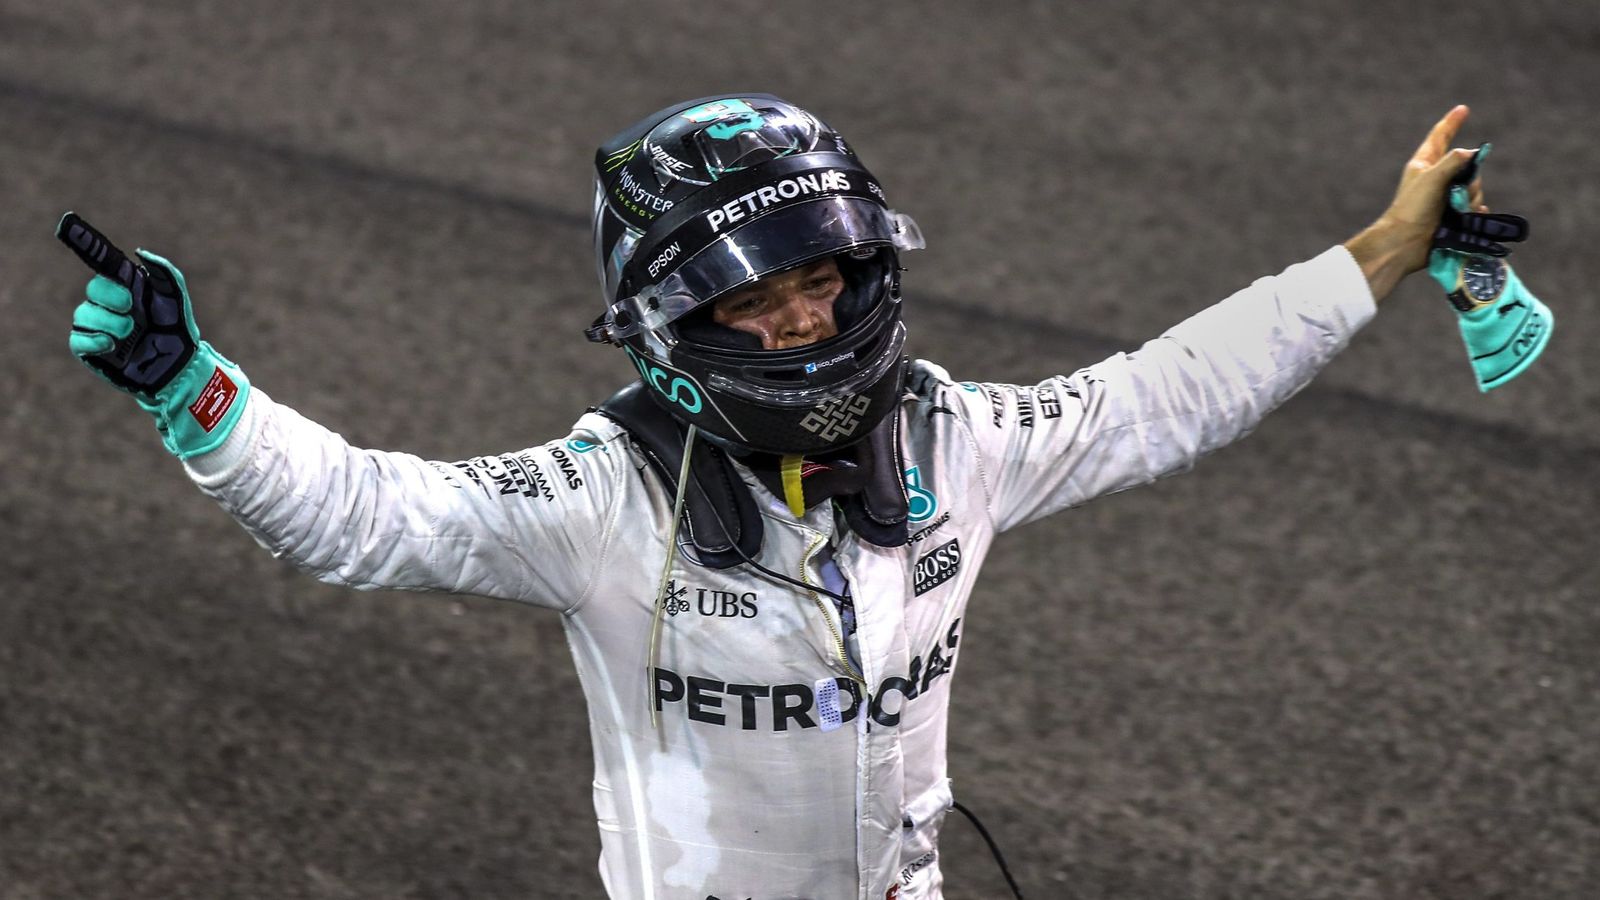 Foto: Rosberg, eufórico en el circuito de Abu Dabi tras proclamarse campeón (Srdjan Suki/EFE).